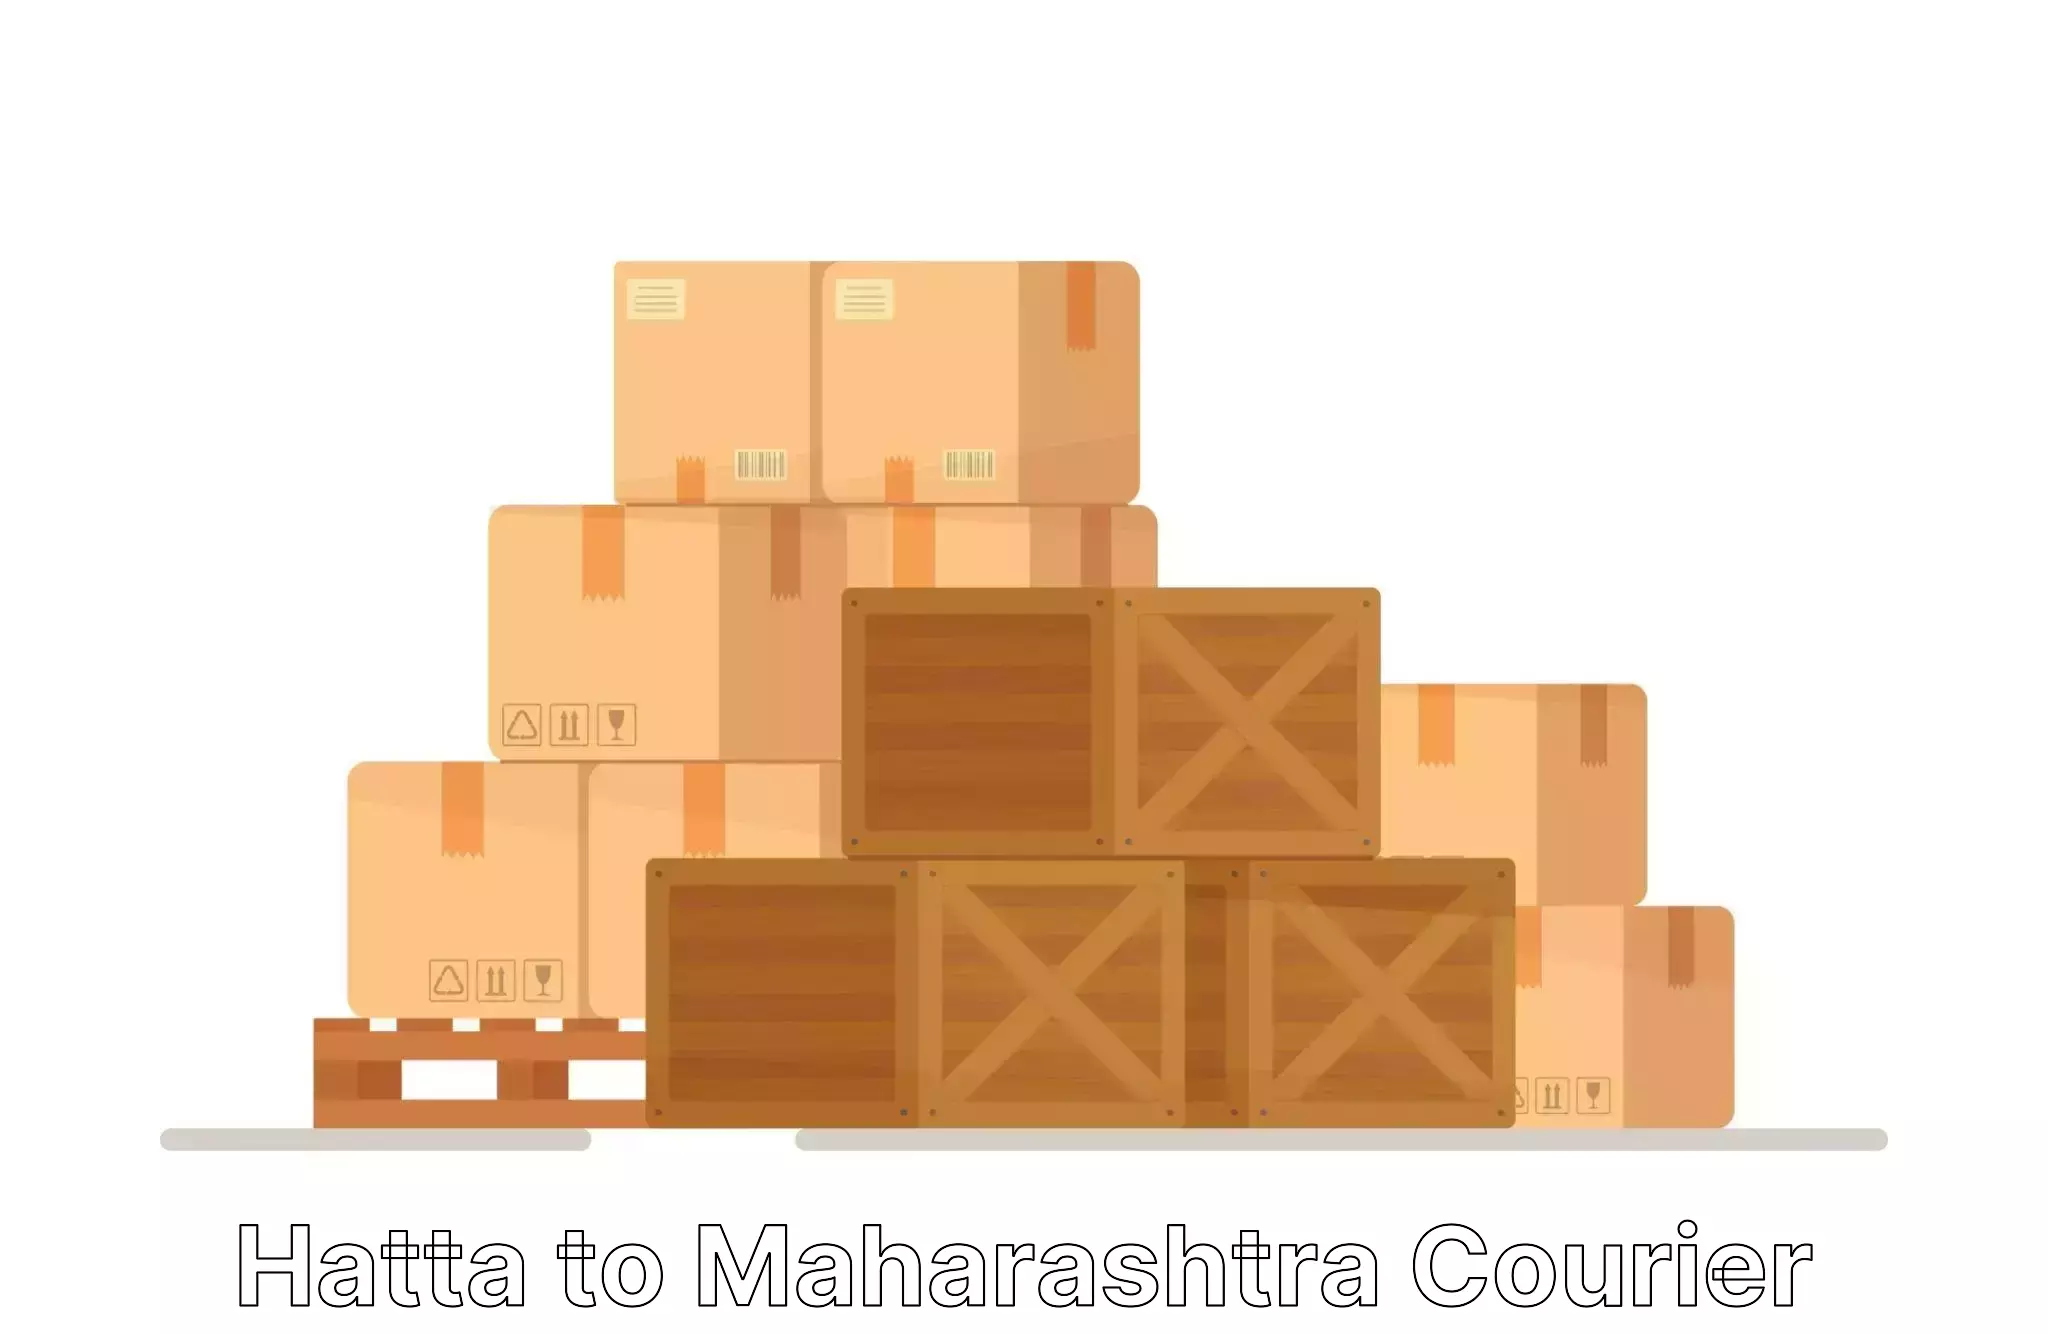 Home goods moving company Hatta to Maharashtra